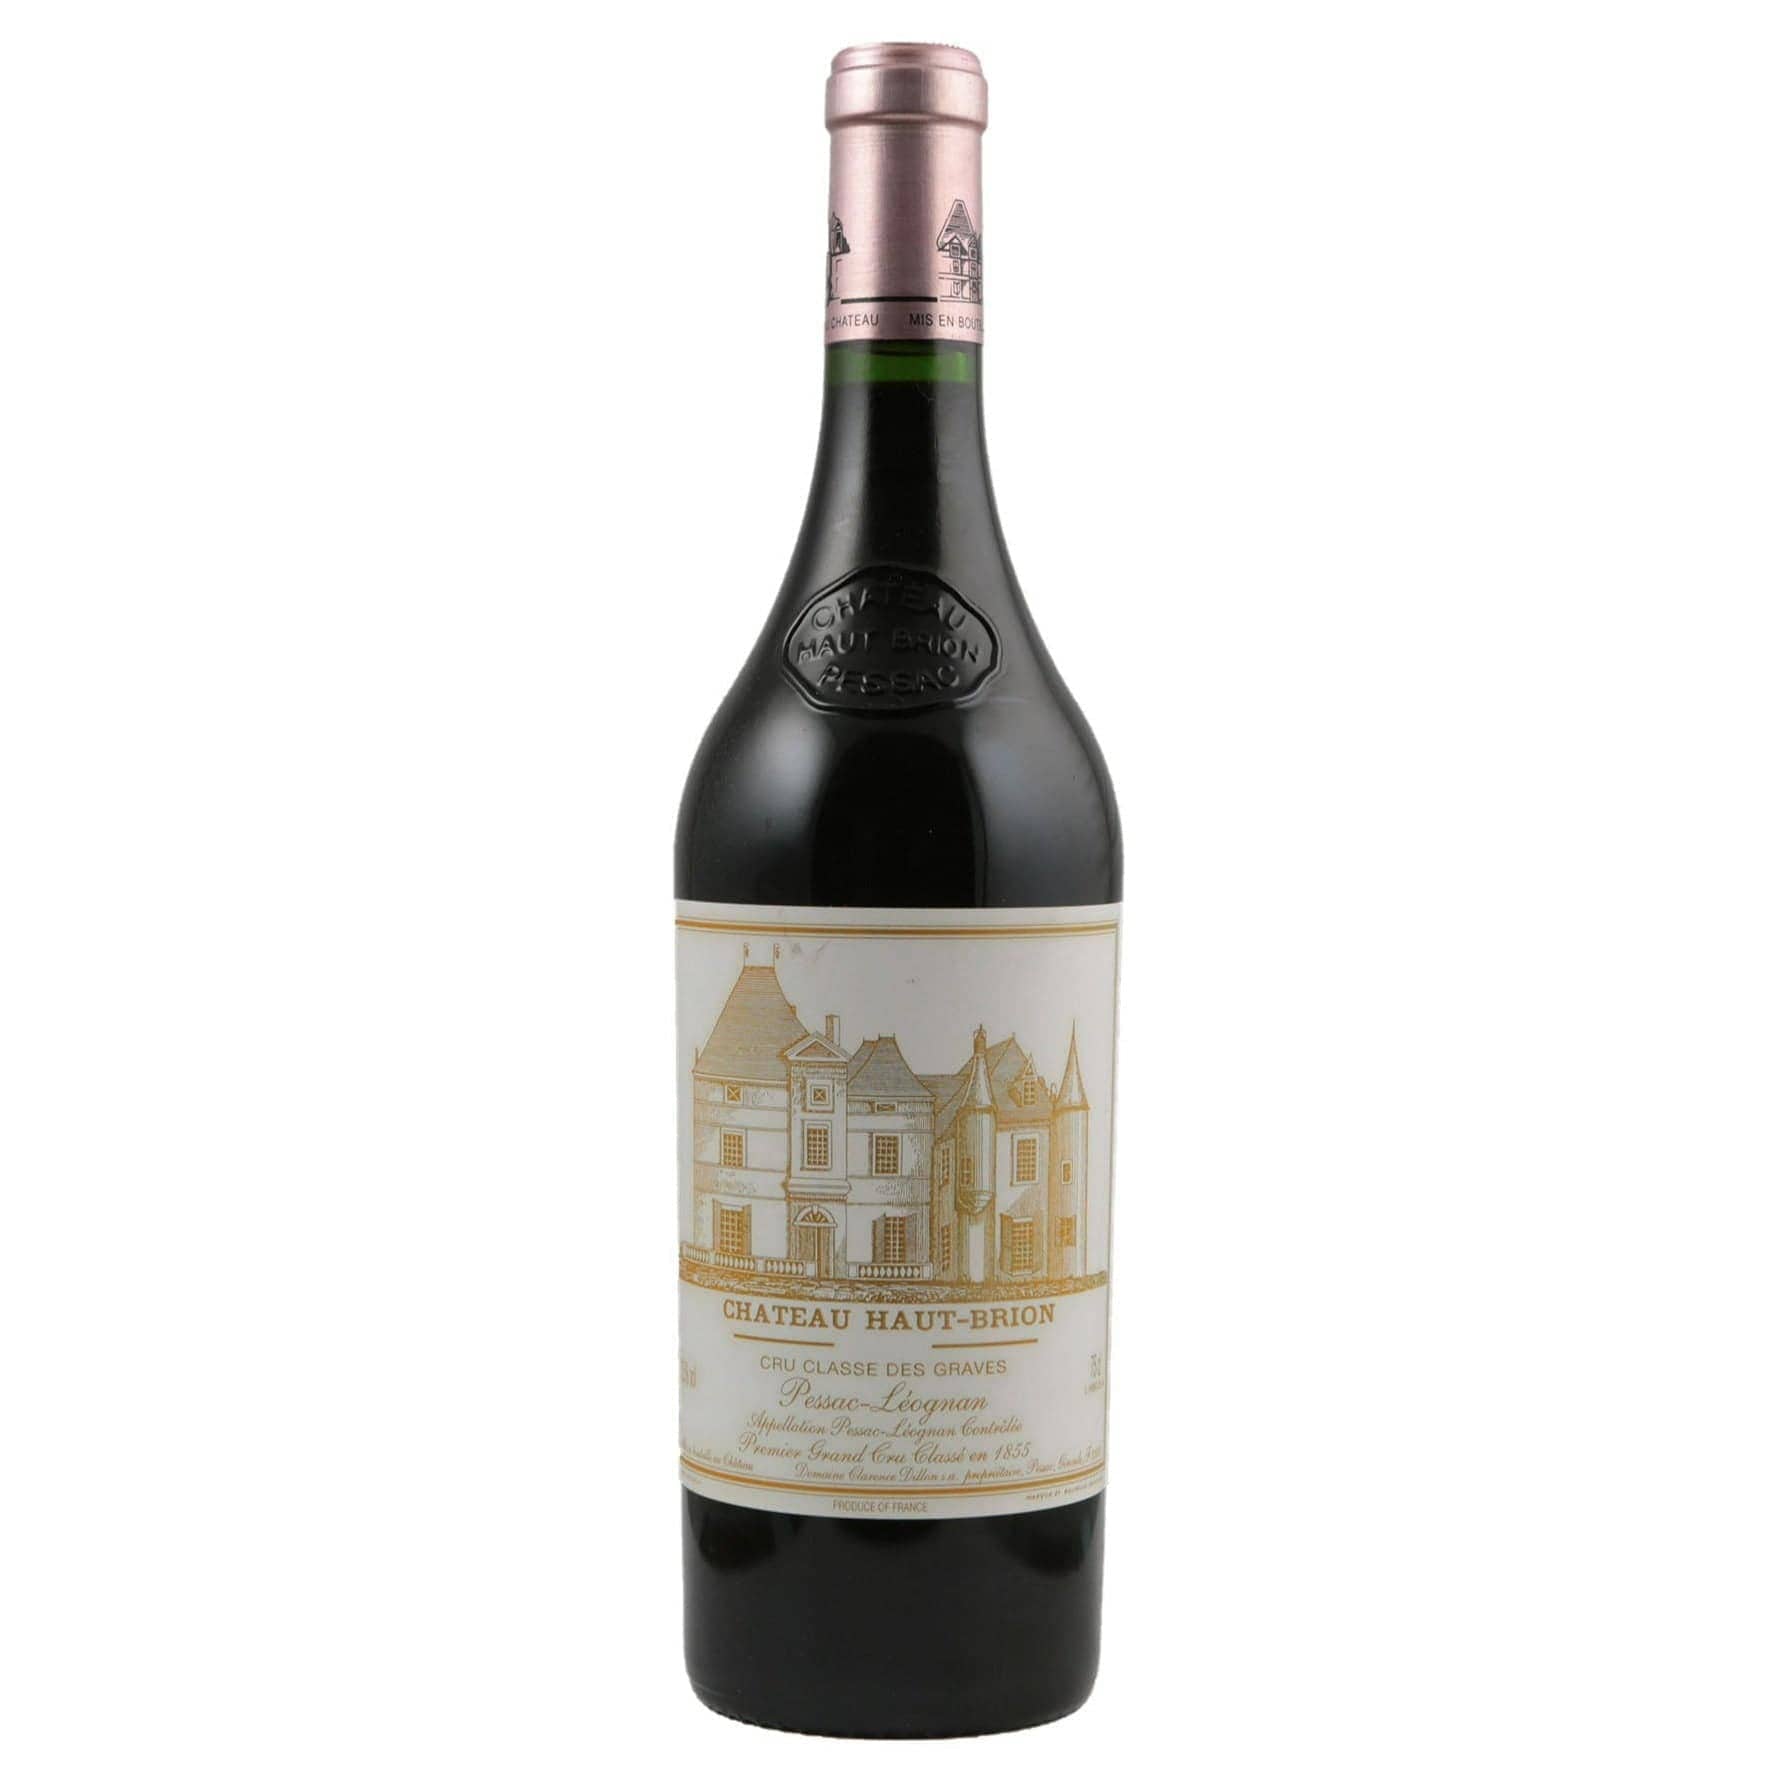 Single bottle of Red wine Ch. Haut Brion, 1st Growth Grand Cru Classe, Pessac-Leognan, 2010 57% Cabernet Sauvignon, 23% Merlot & 20% Cabernet Franc